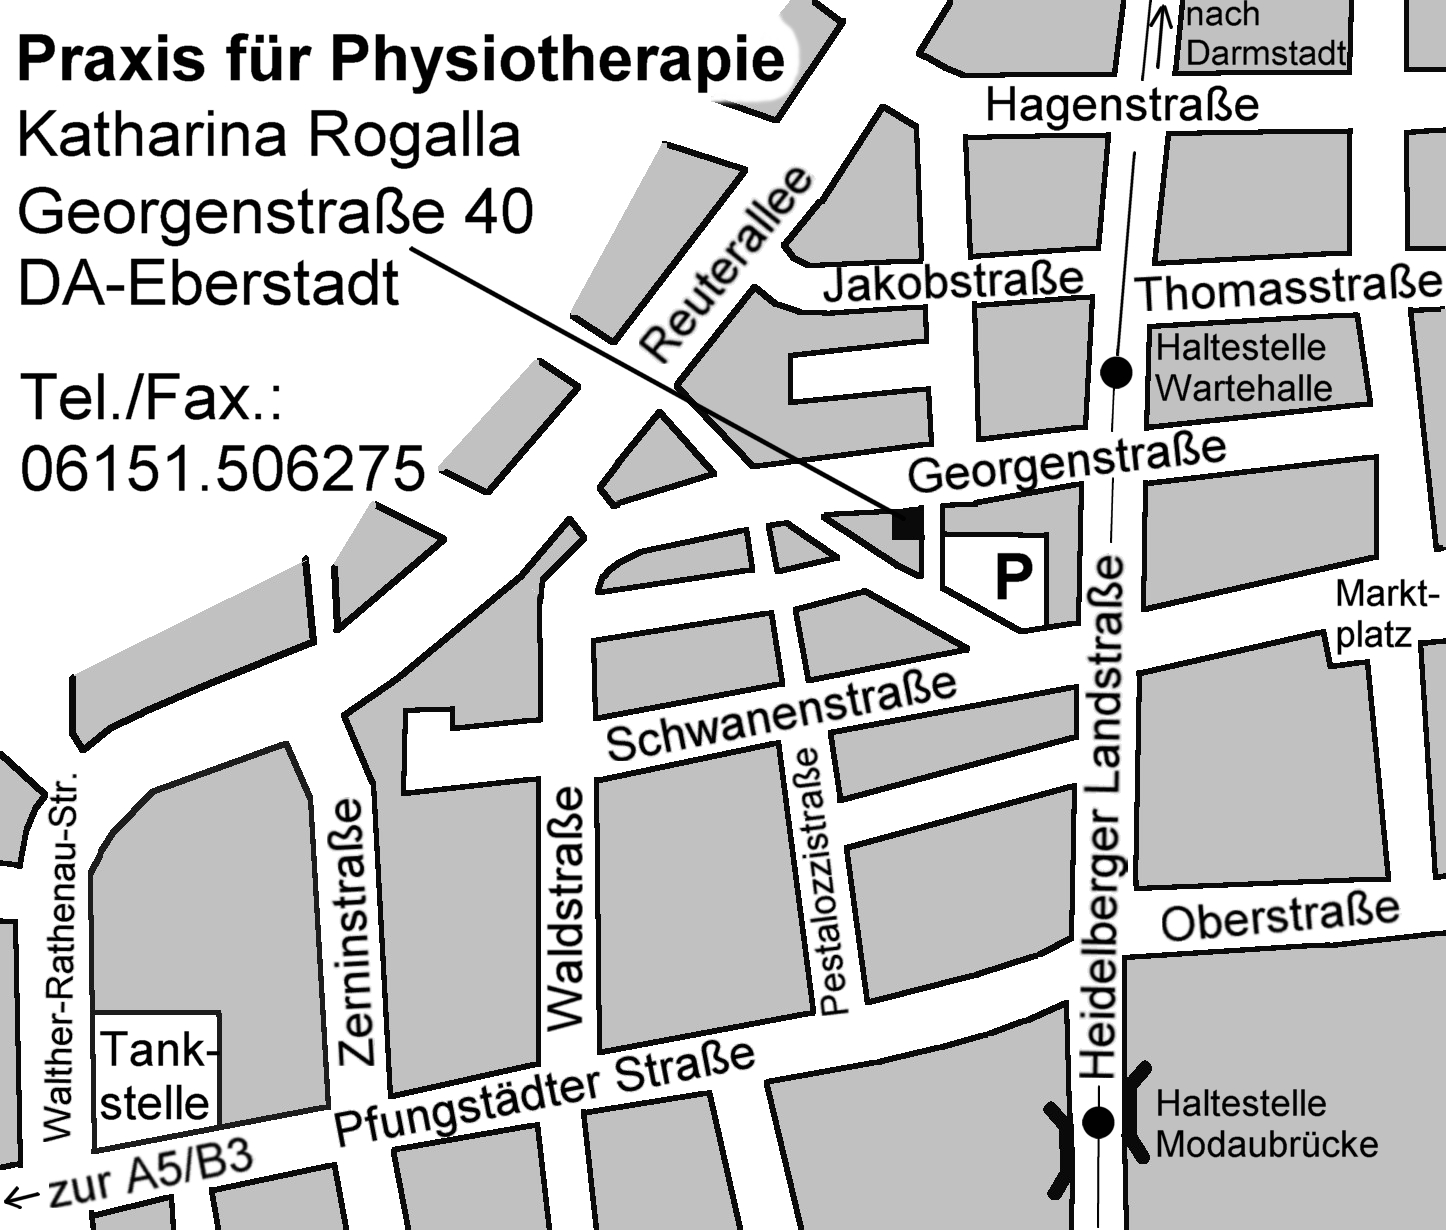 Lageplan der Praxis für Physiotherapie Katharina Rogalla Eberstadt